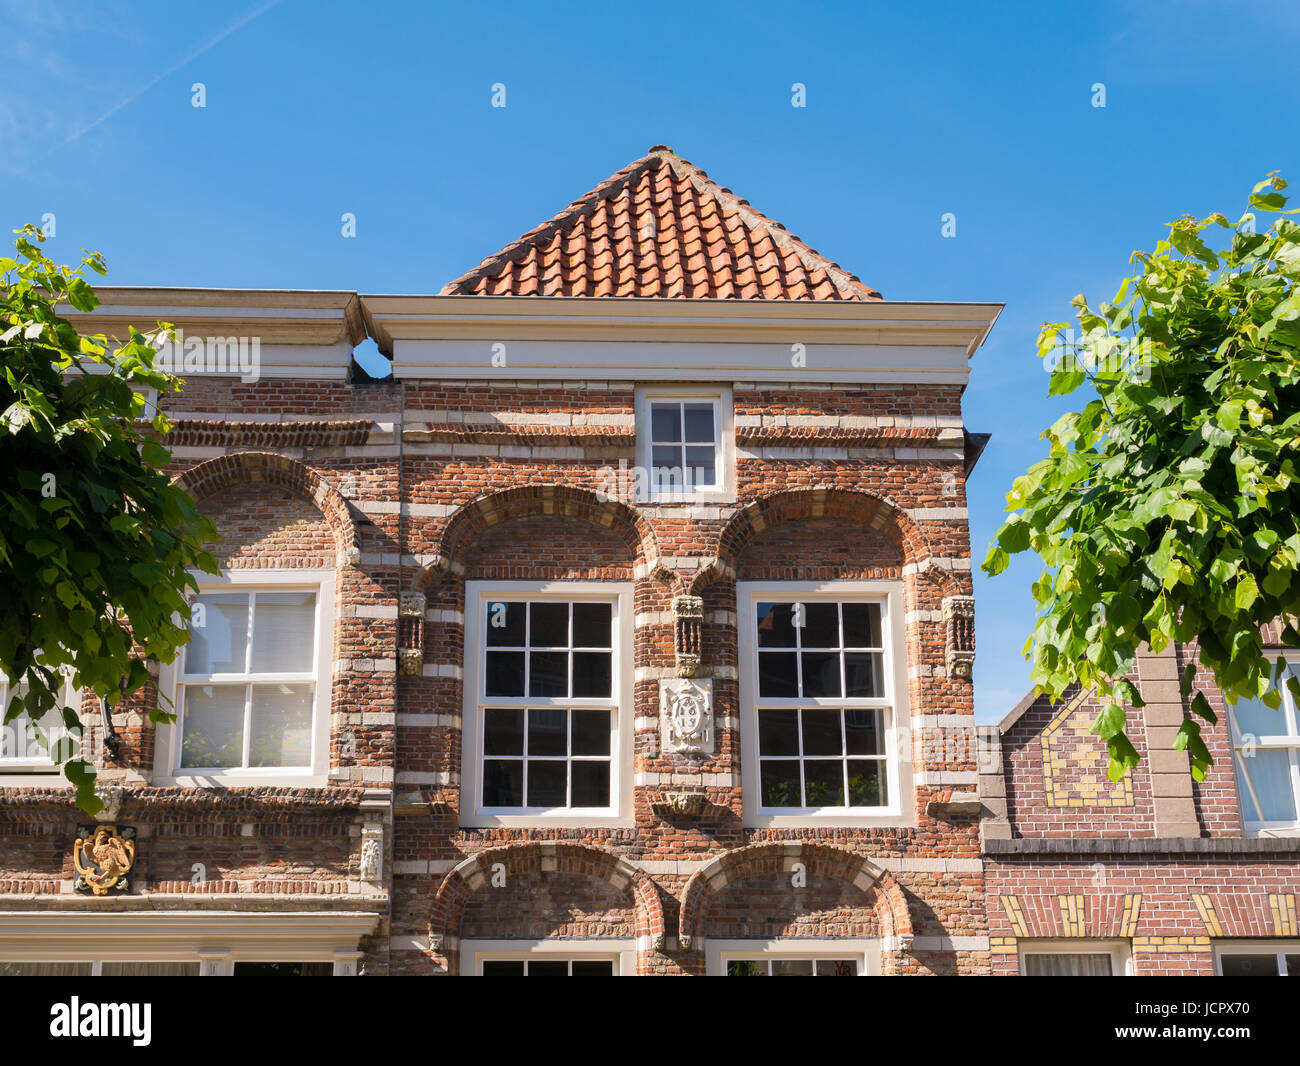 Vordere obere Fassade des historischen Hauses Hoogstraat 9 mit Gesims Giebel in der Altstadt der Festungsstadt Woudrichem, Brabant, Niederlande Stockfoto